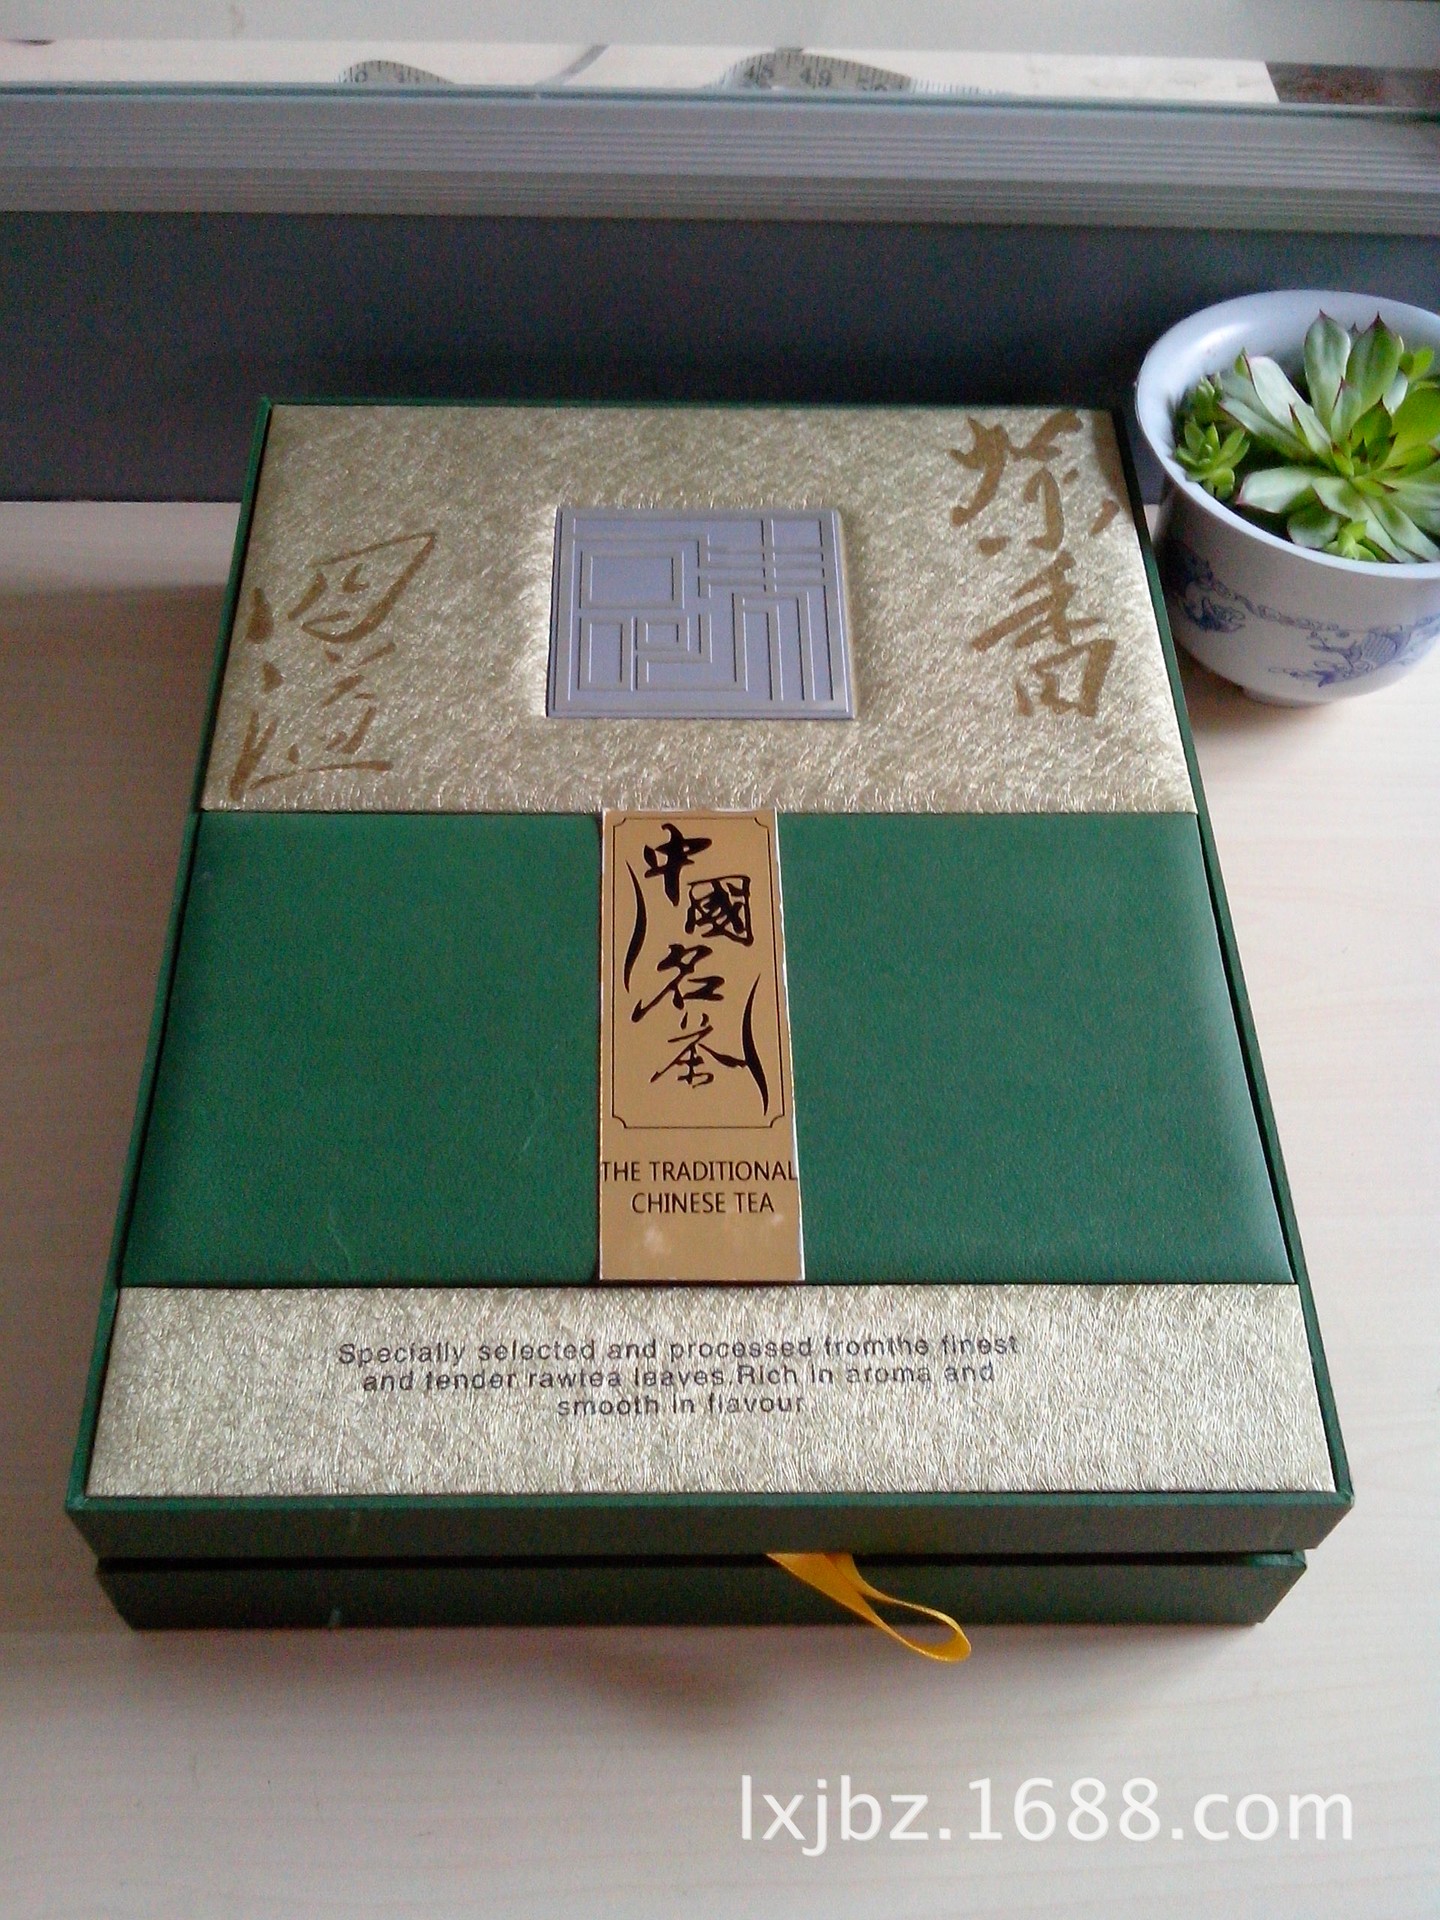 茶叶盒定制 中国名茶包装盒 茶叶礼盒 厂家设计生产直销 特价免邮